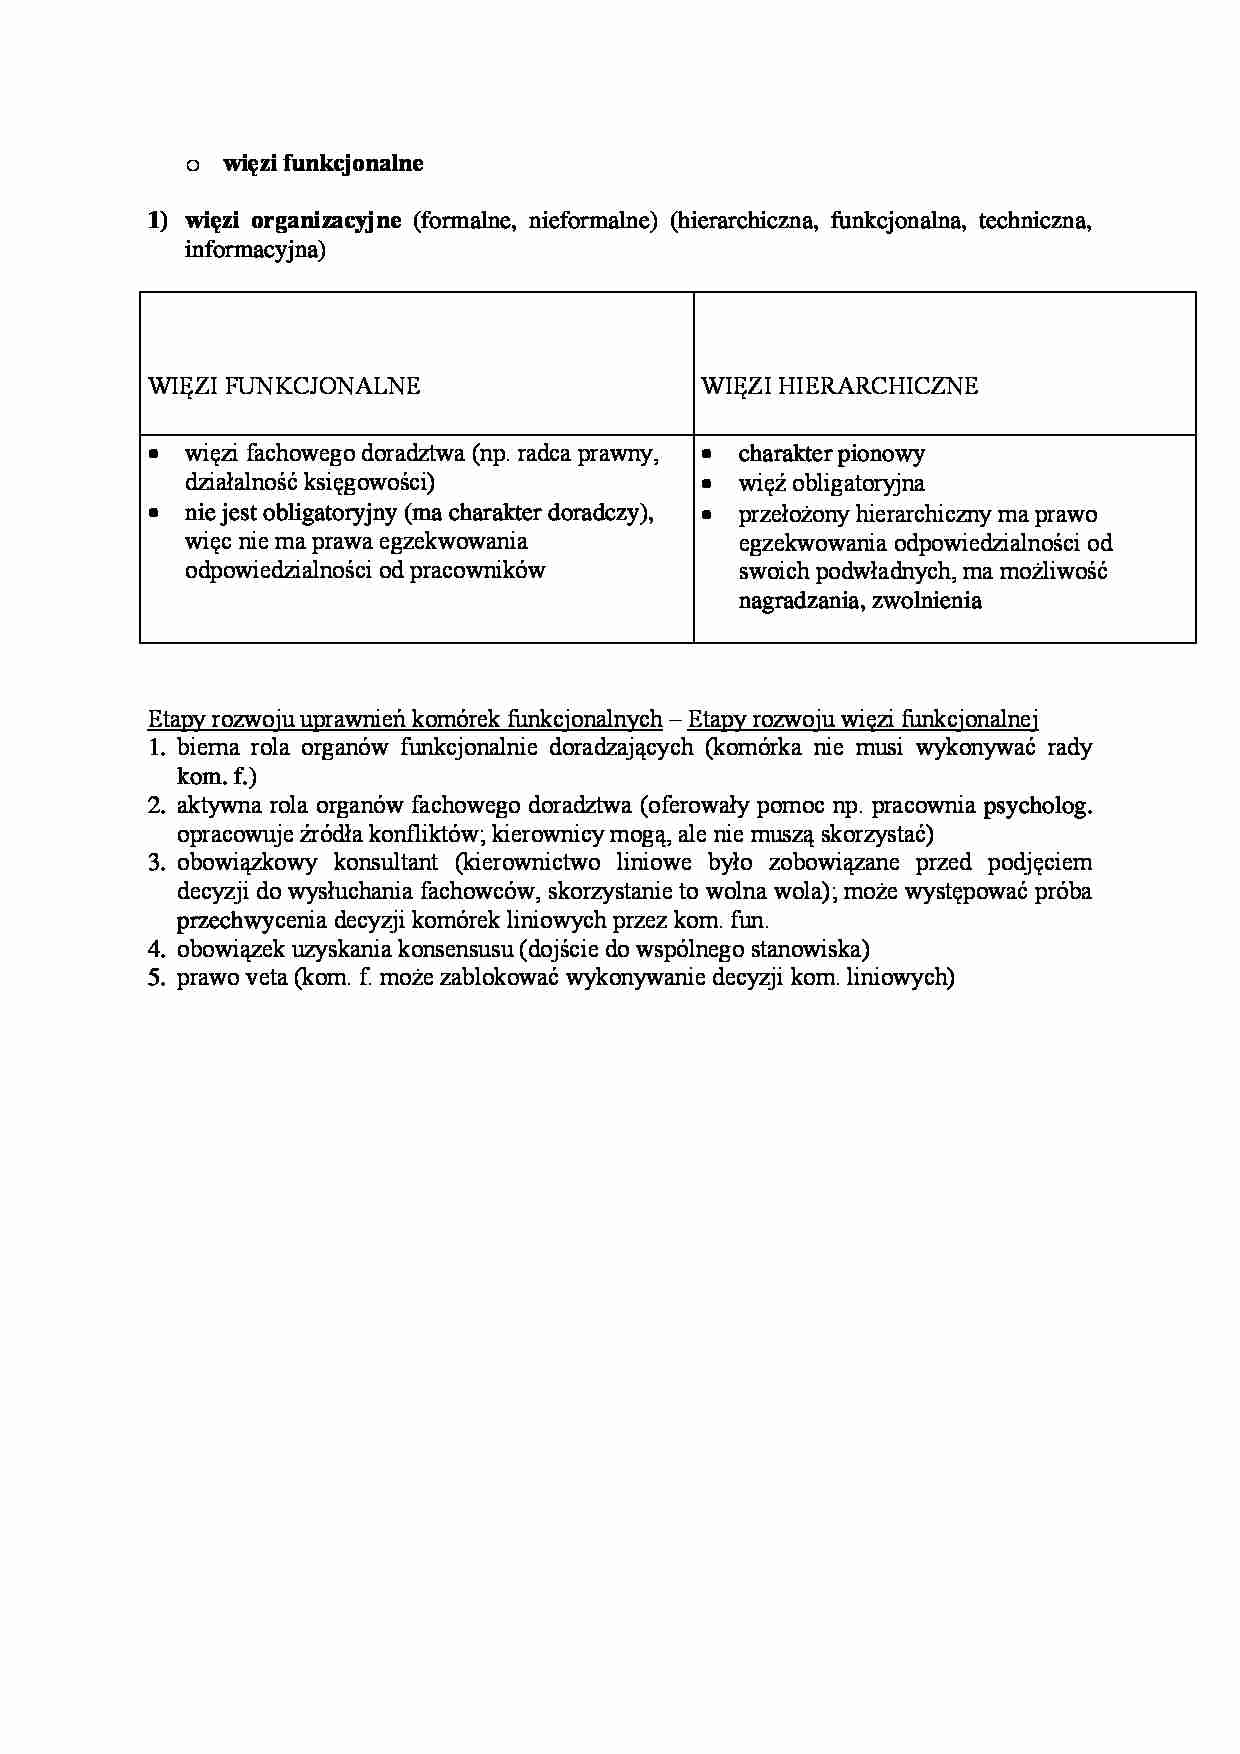 Więzi funkcjonalne i organizacyjne - strona 1